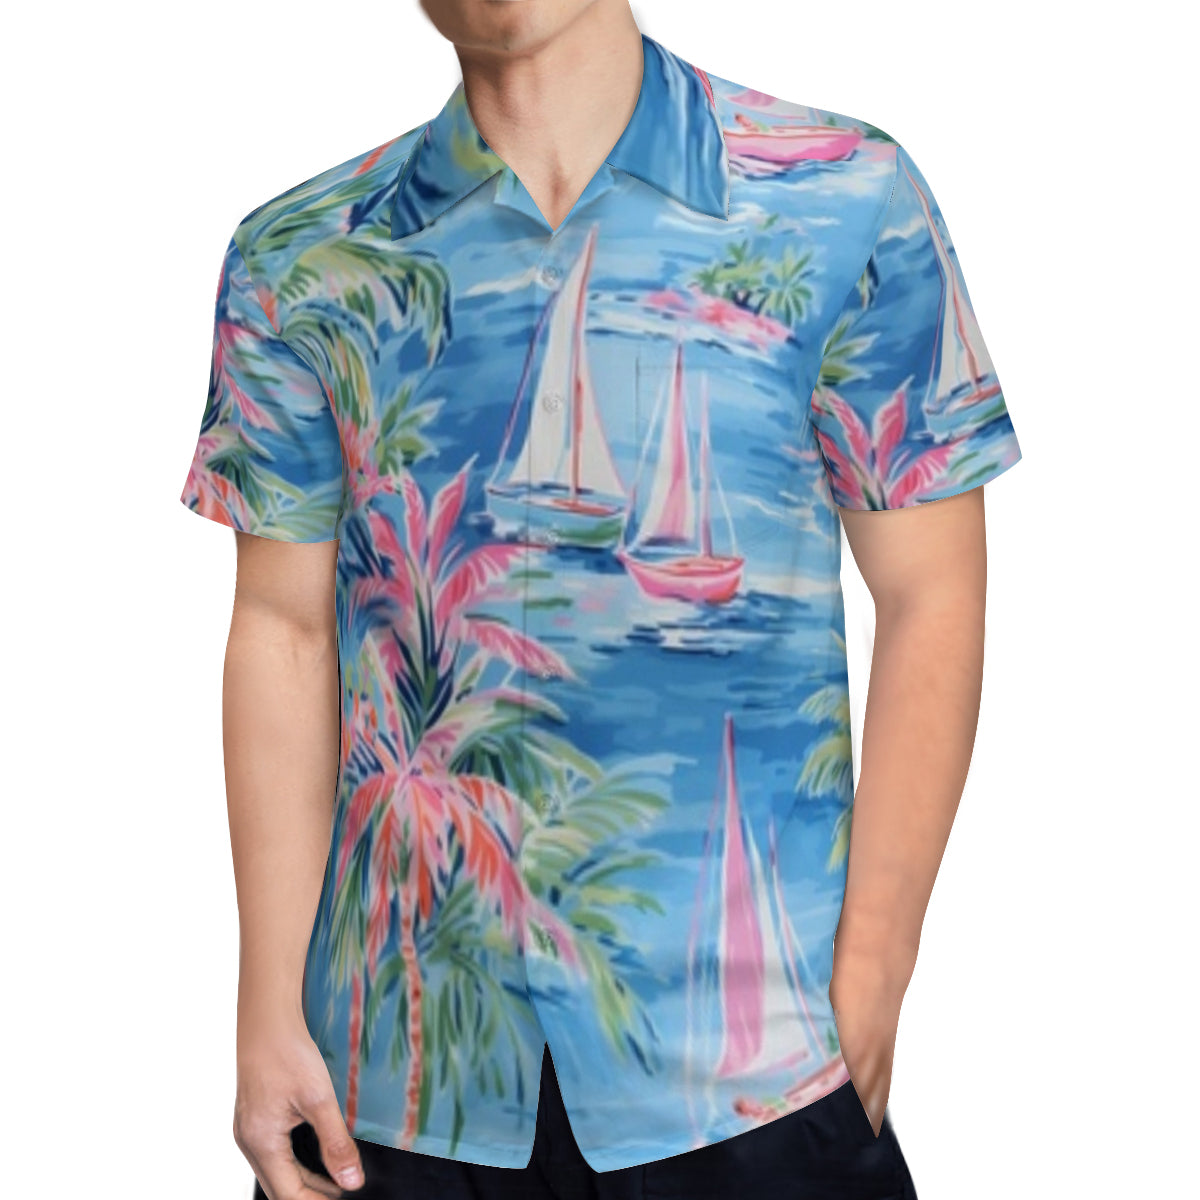 Hawaiian shirt - pink and blue hawaiian scene